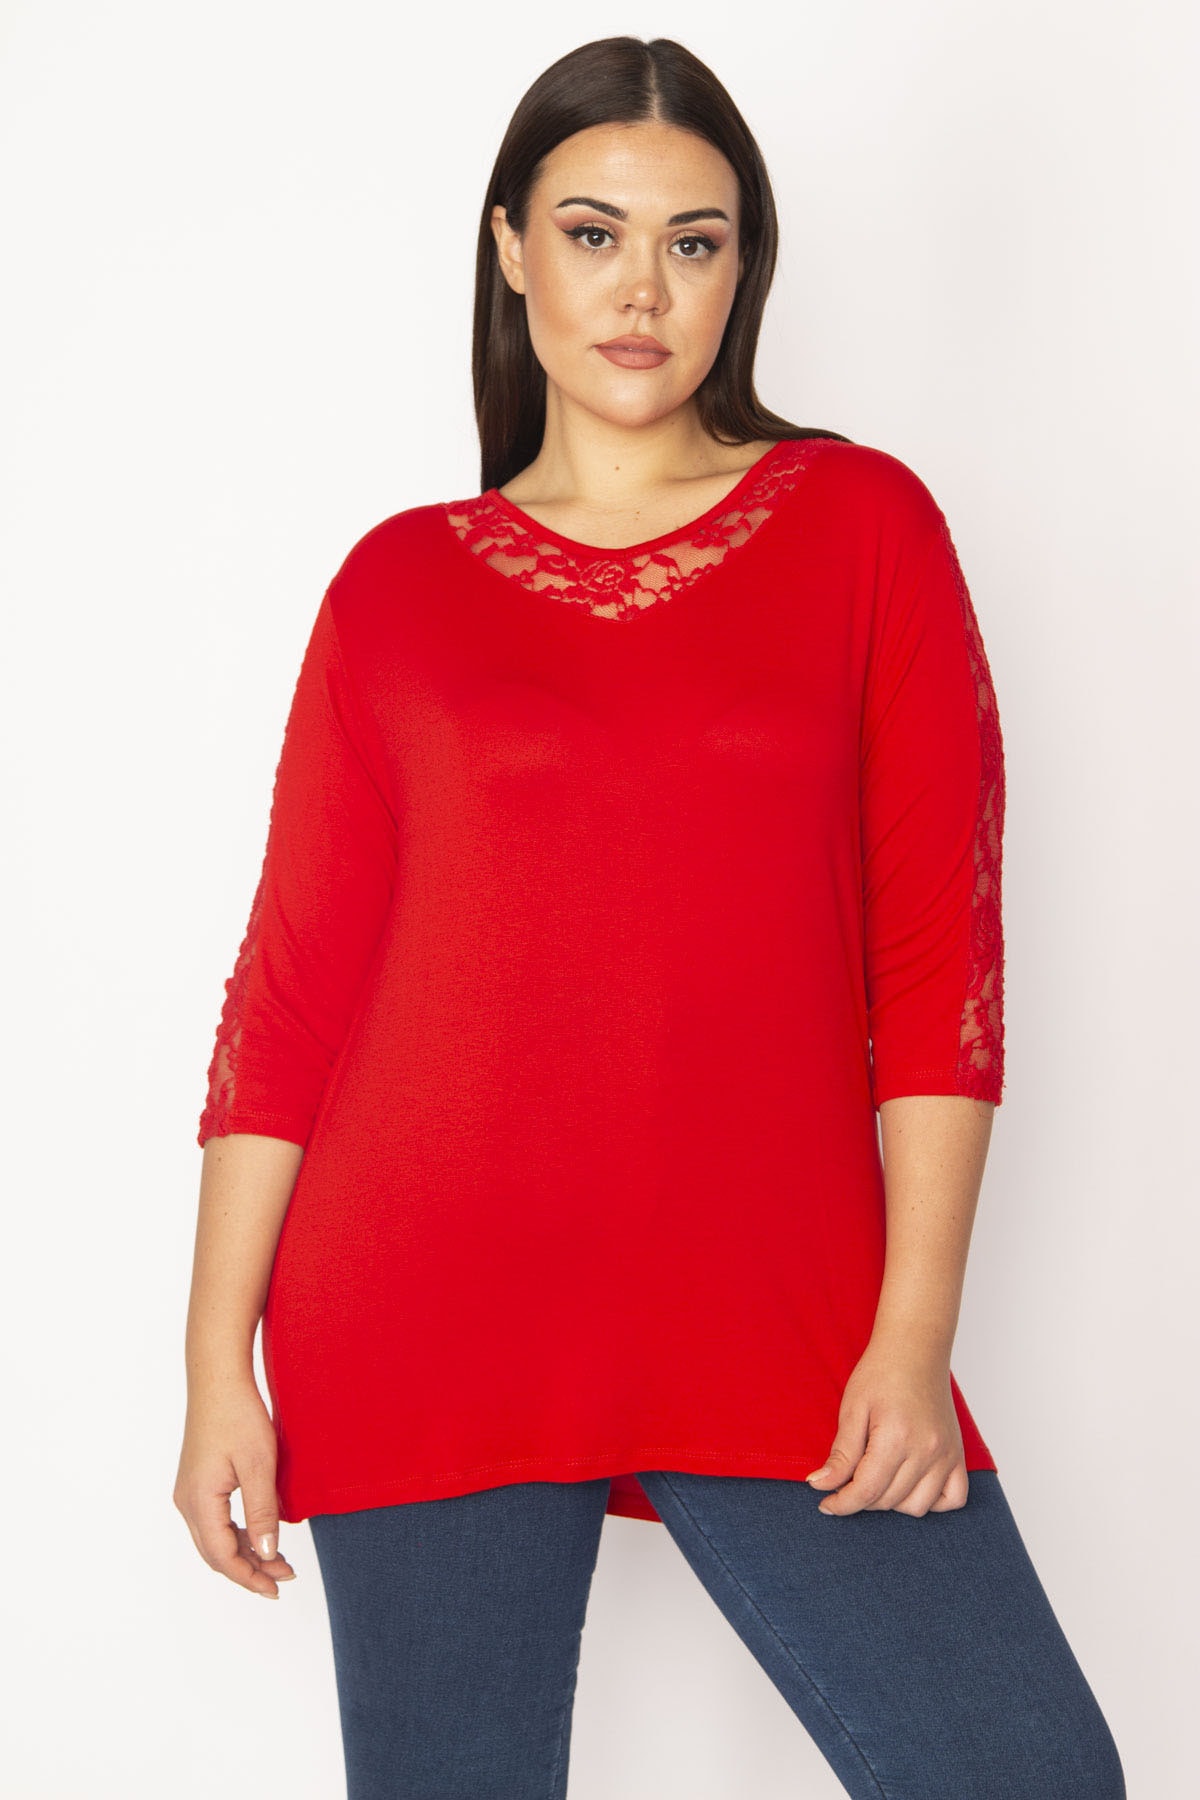 Женская красная кружевная блузка большого размера с деталями 65n29533 Şans, красный женская желтая блузка большого размера с боковым разрезом спереди şans желтый